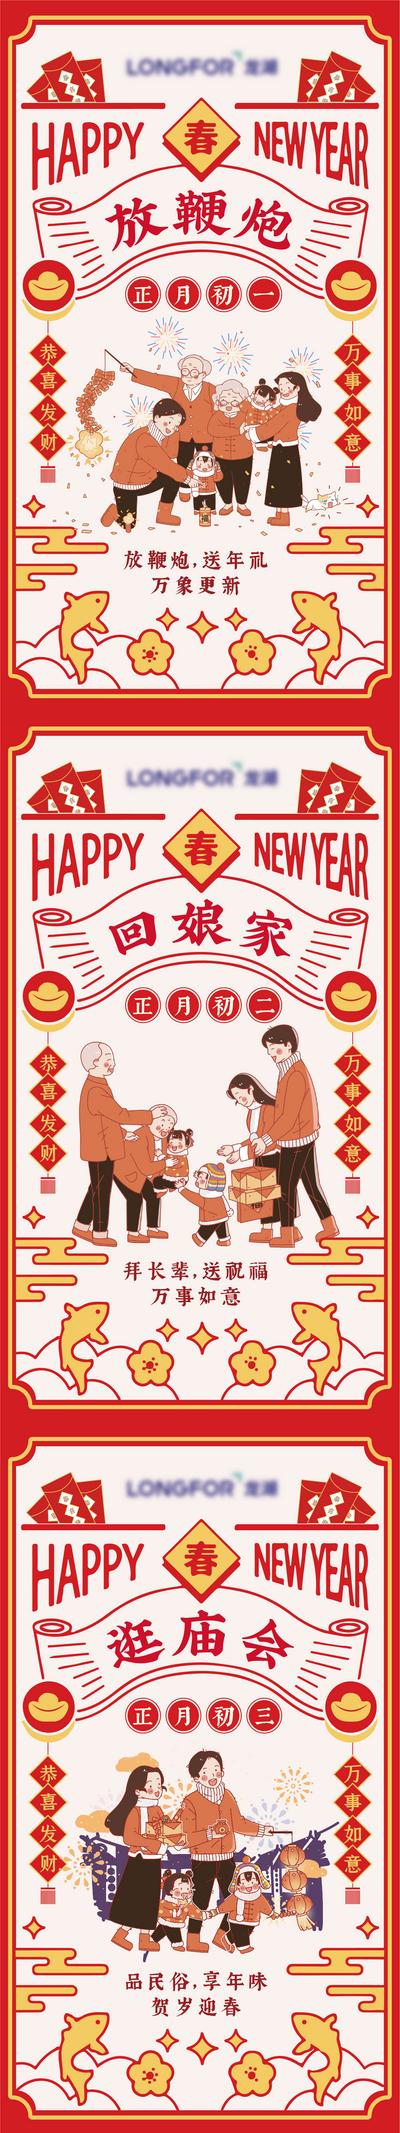 南门网 海报 春节 过年 中国传统节日 新年 年俗 初一 喜庆 插画 卡通